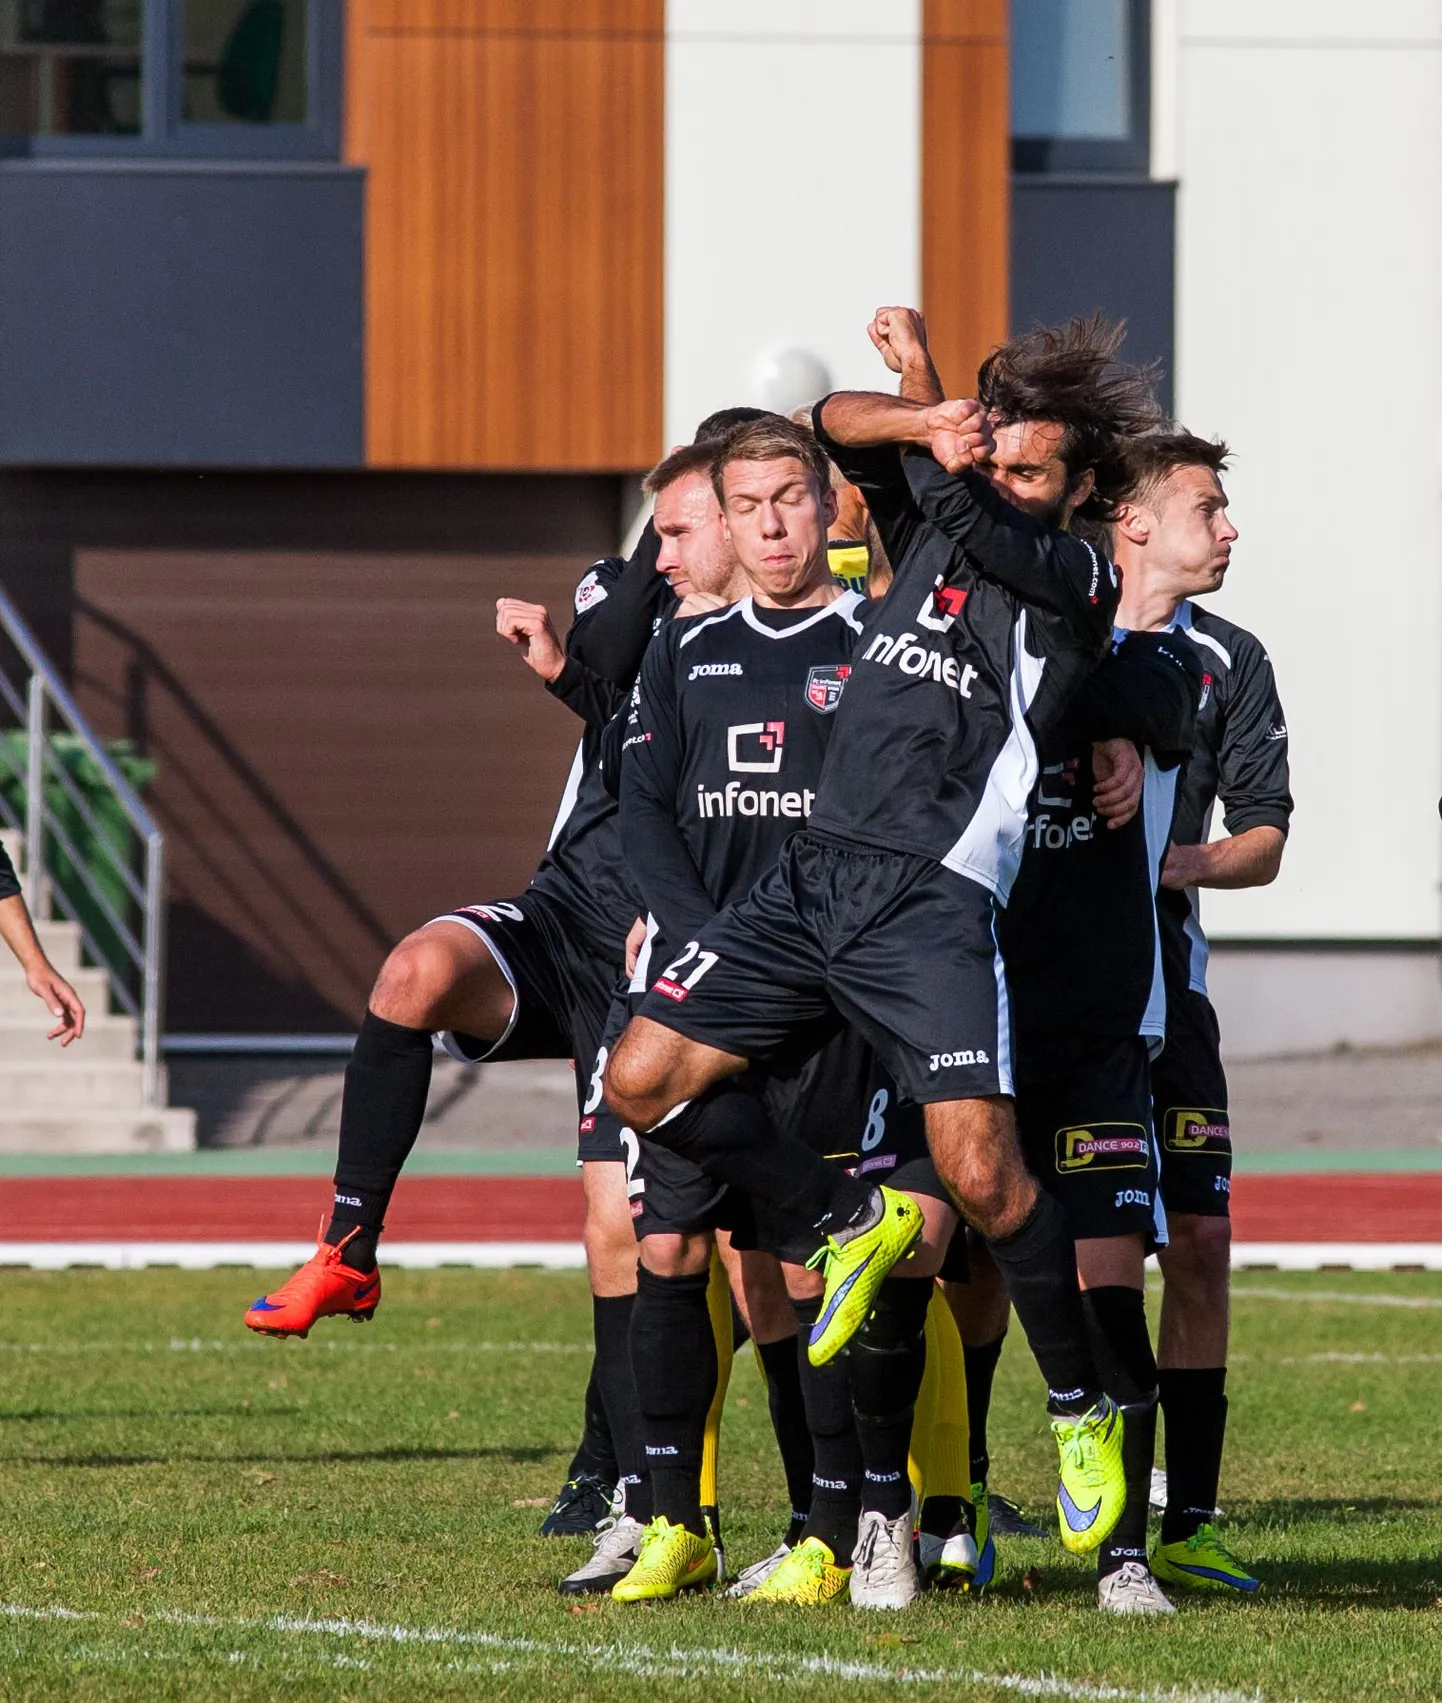 Tallinna FC Infoneti mängijad.